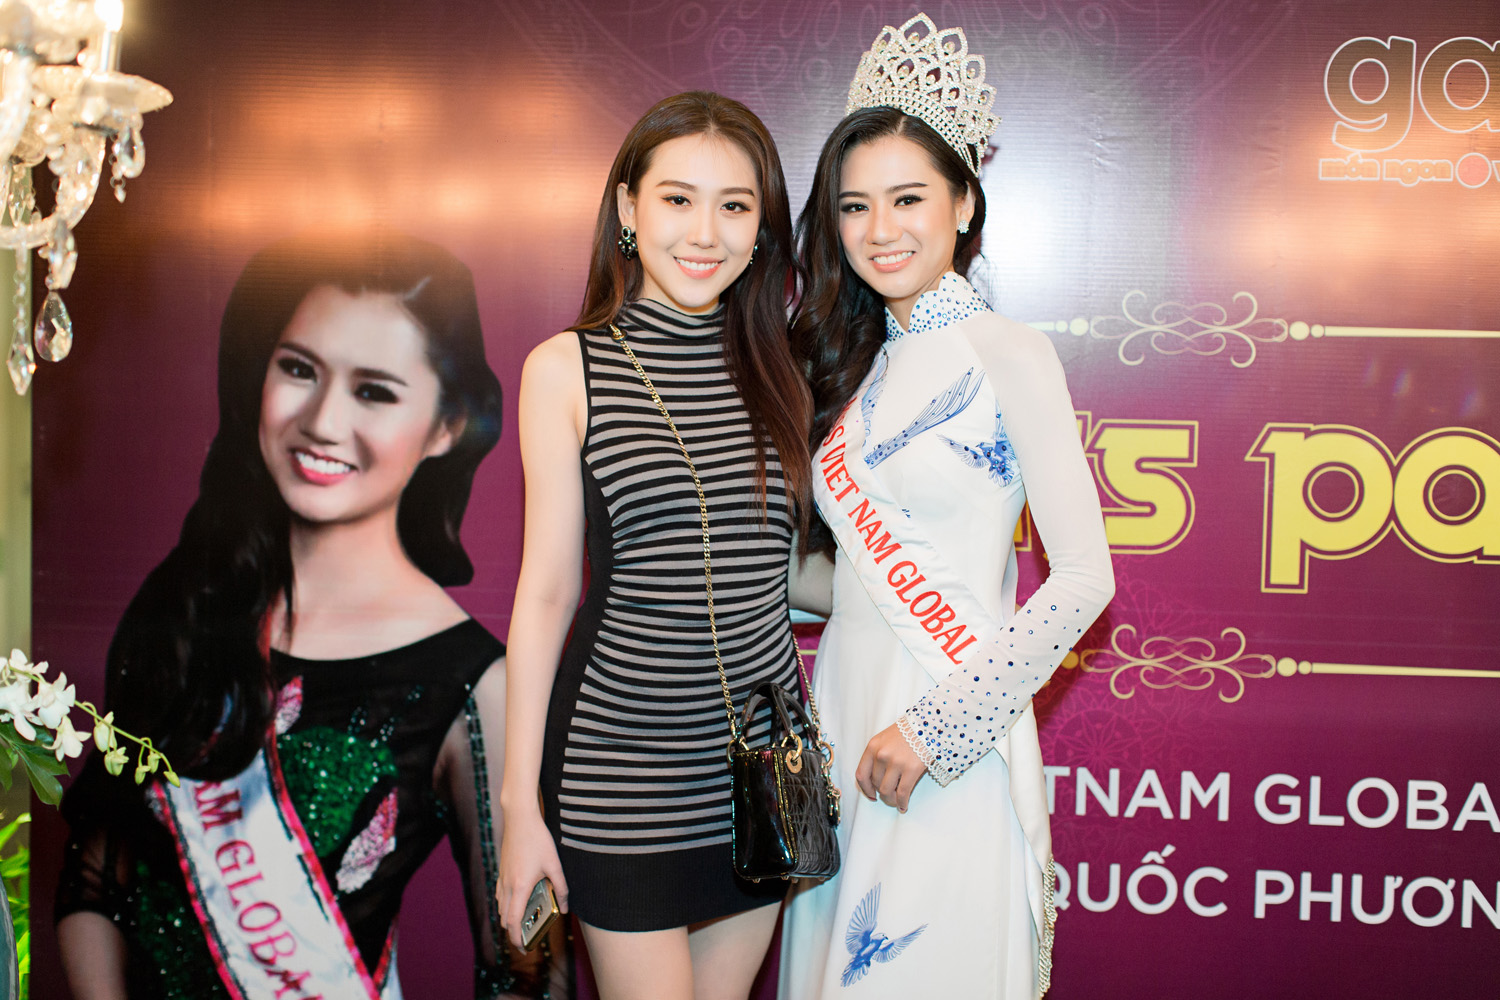 Hoa hậu Hoàng Kim và Hoa hậu Quốc Phương